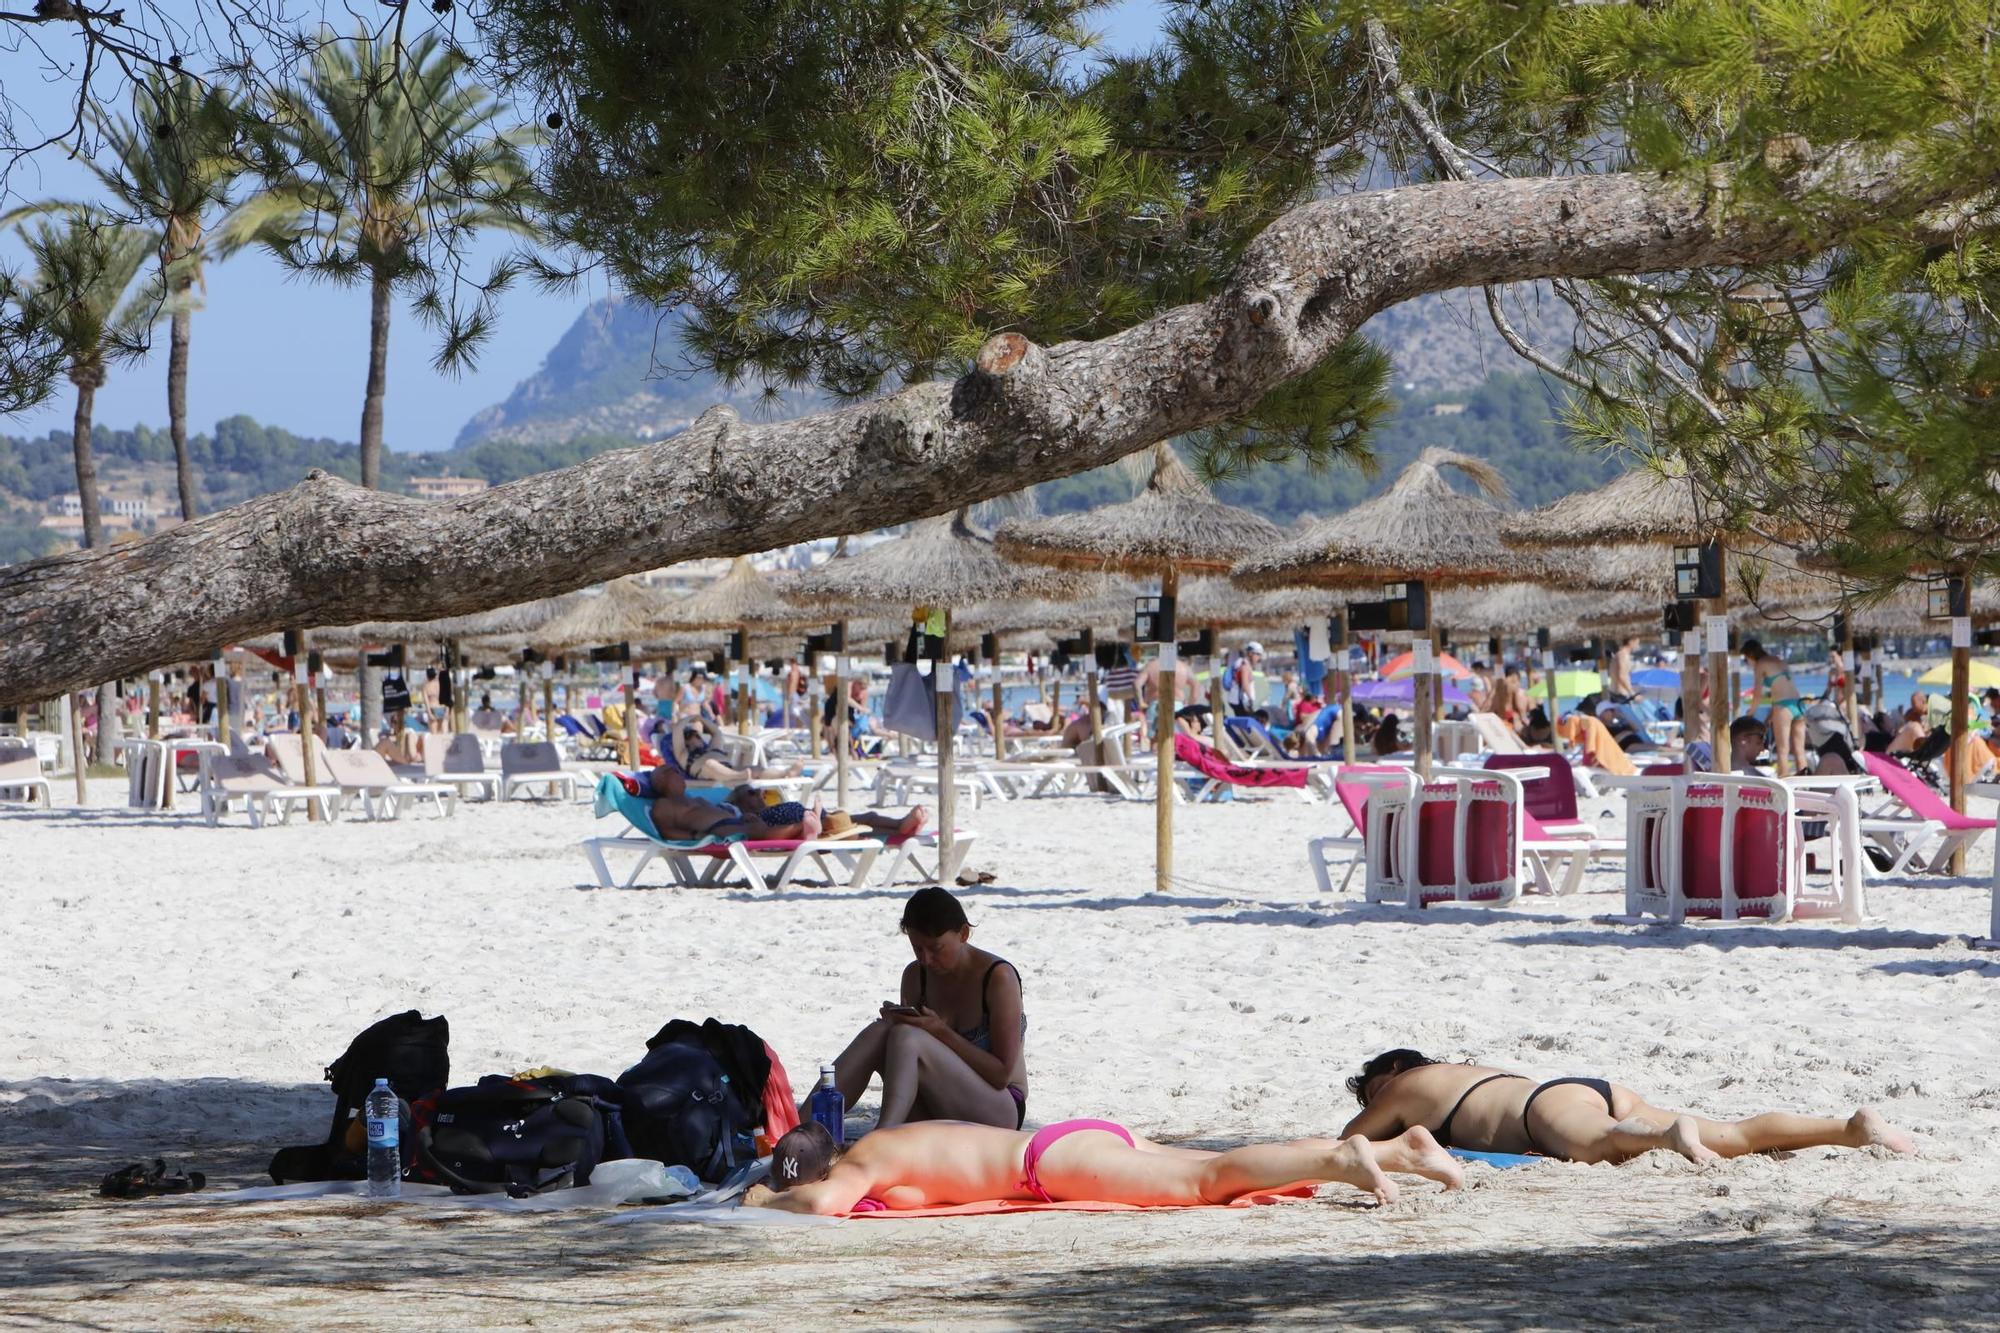 Sommer-Urlaub im Oktober: So sieht es derzeit am Strand von Alcúdia auf Mallorca aus